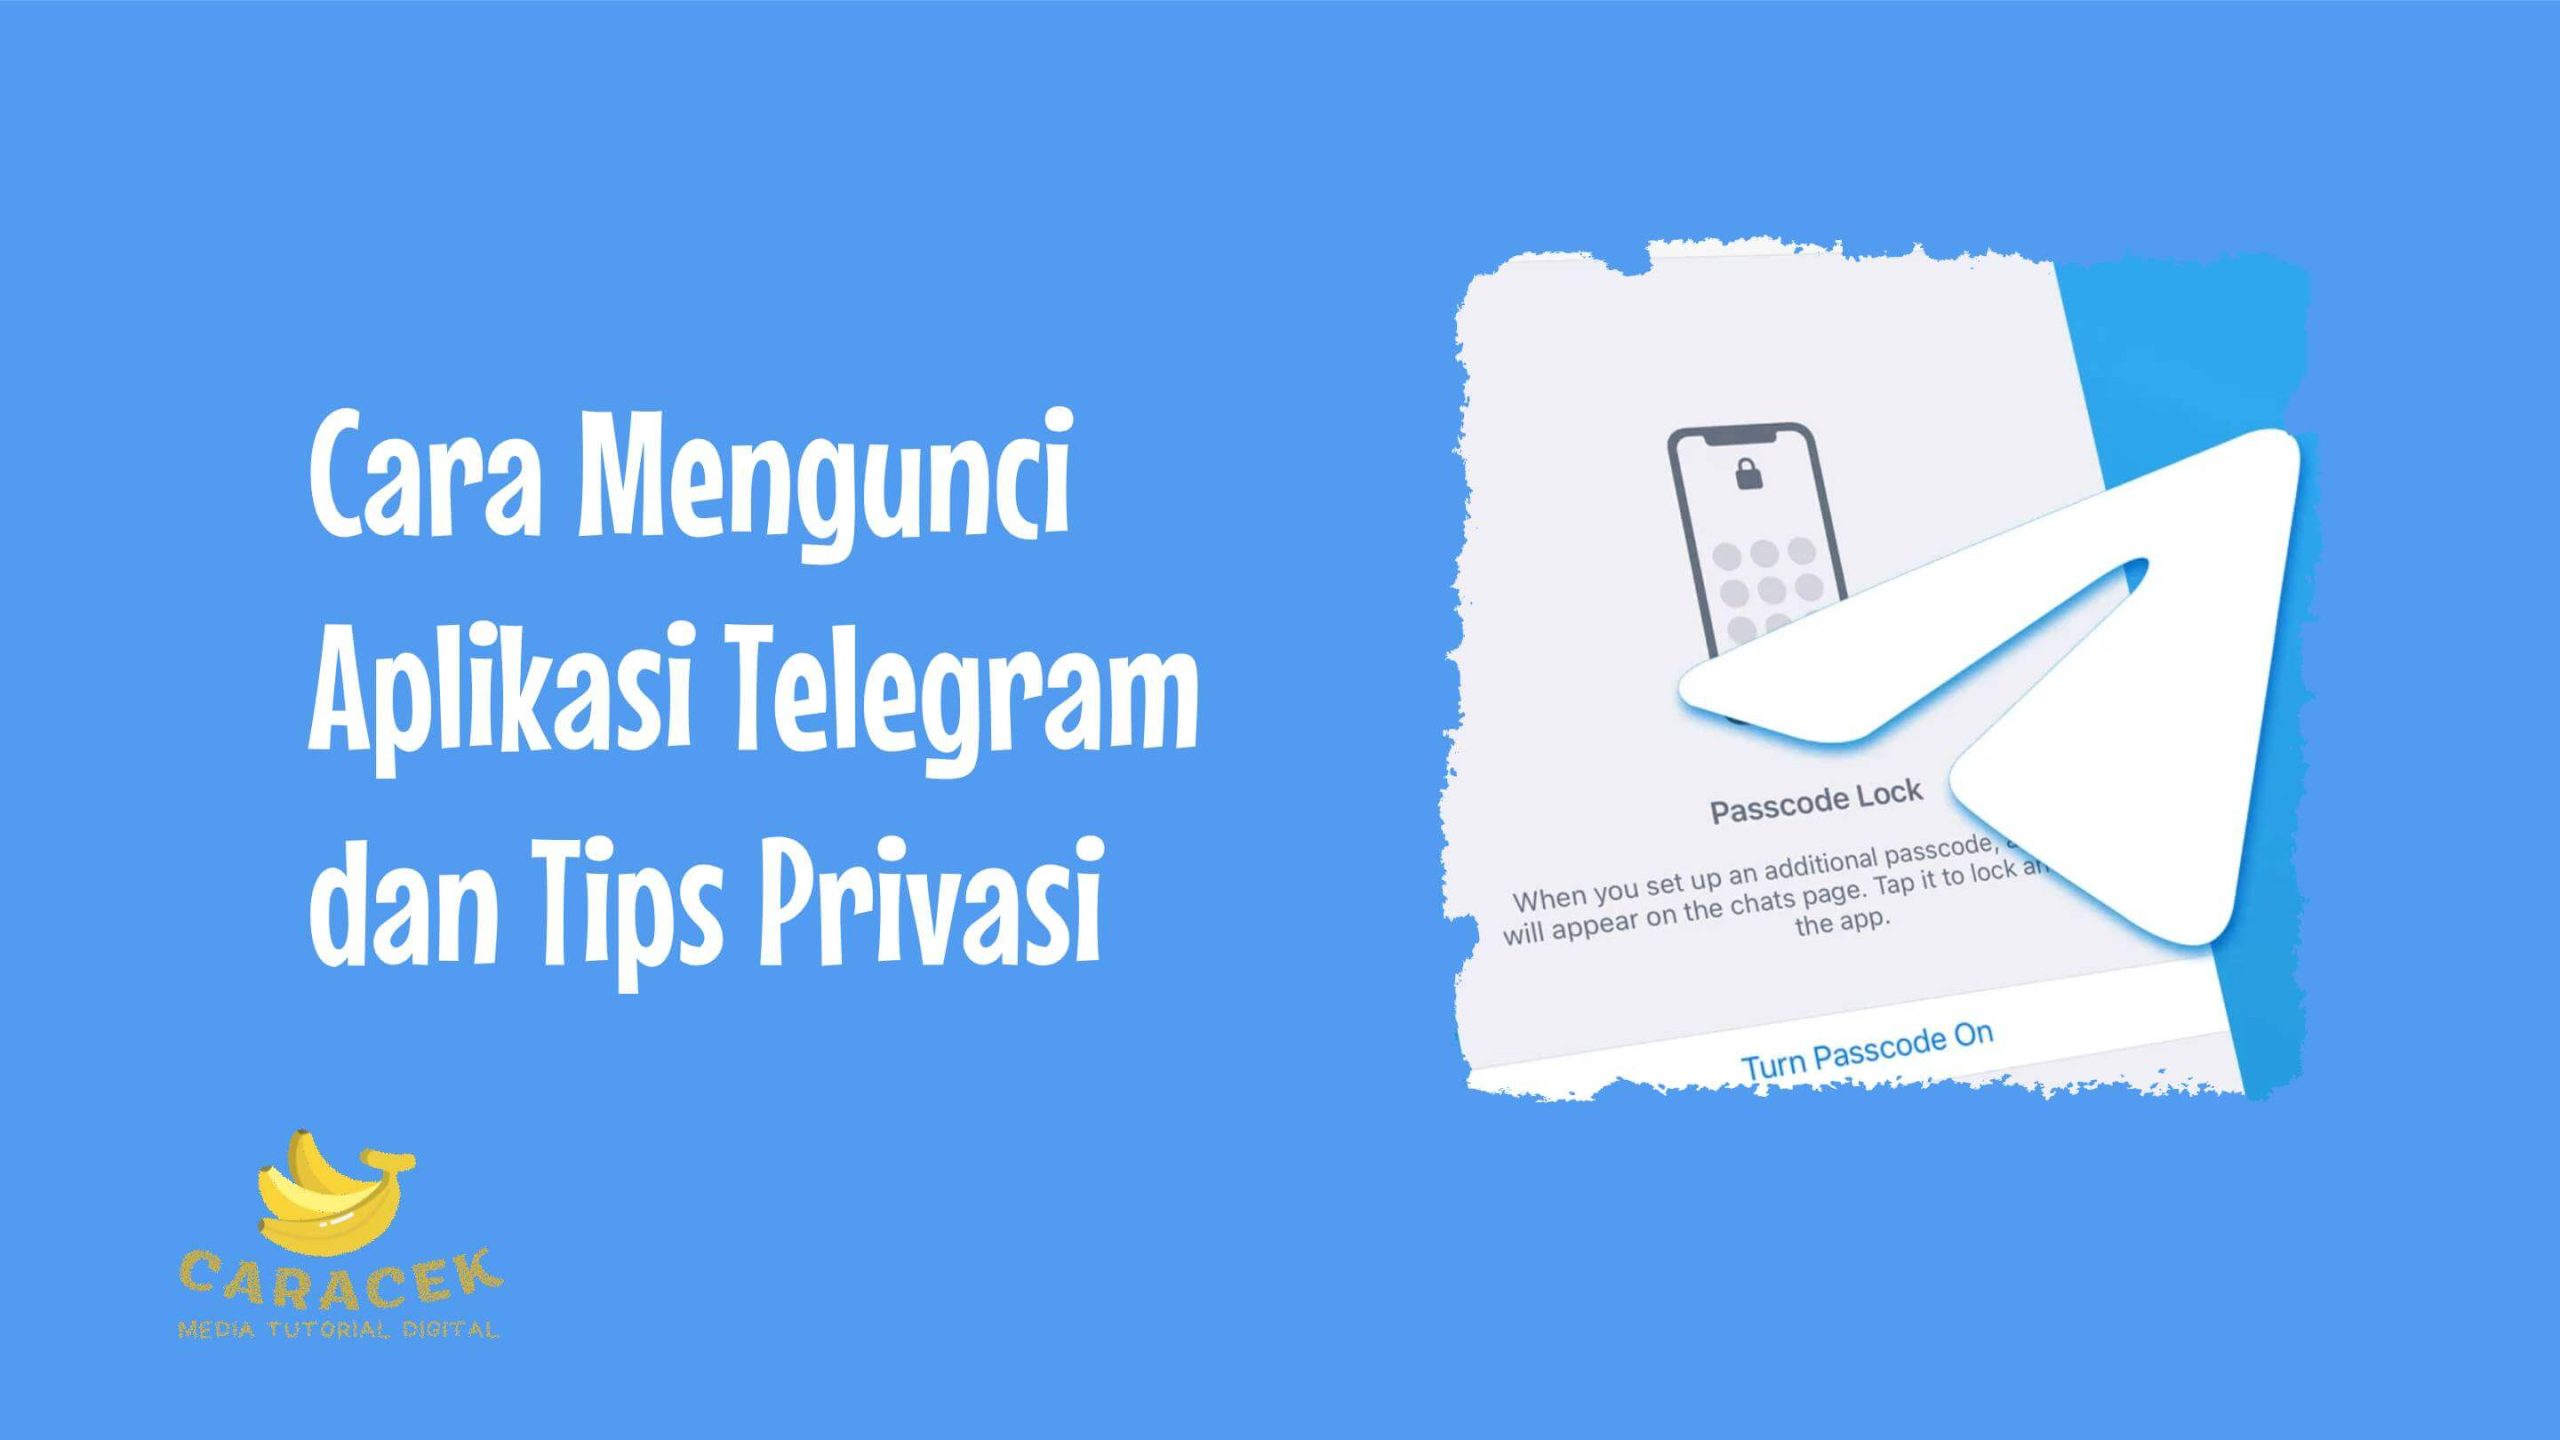 Cara Mengunci Aplikasi Telegram